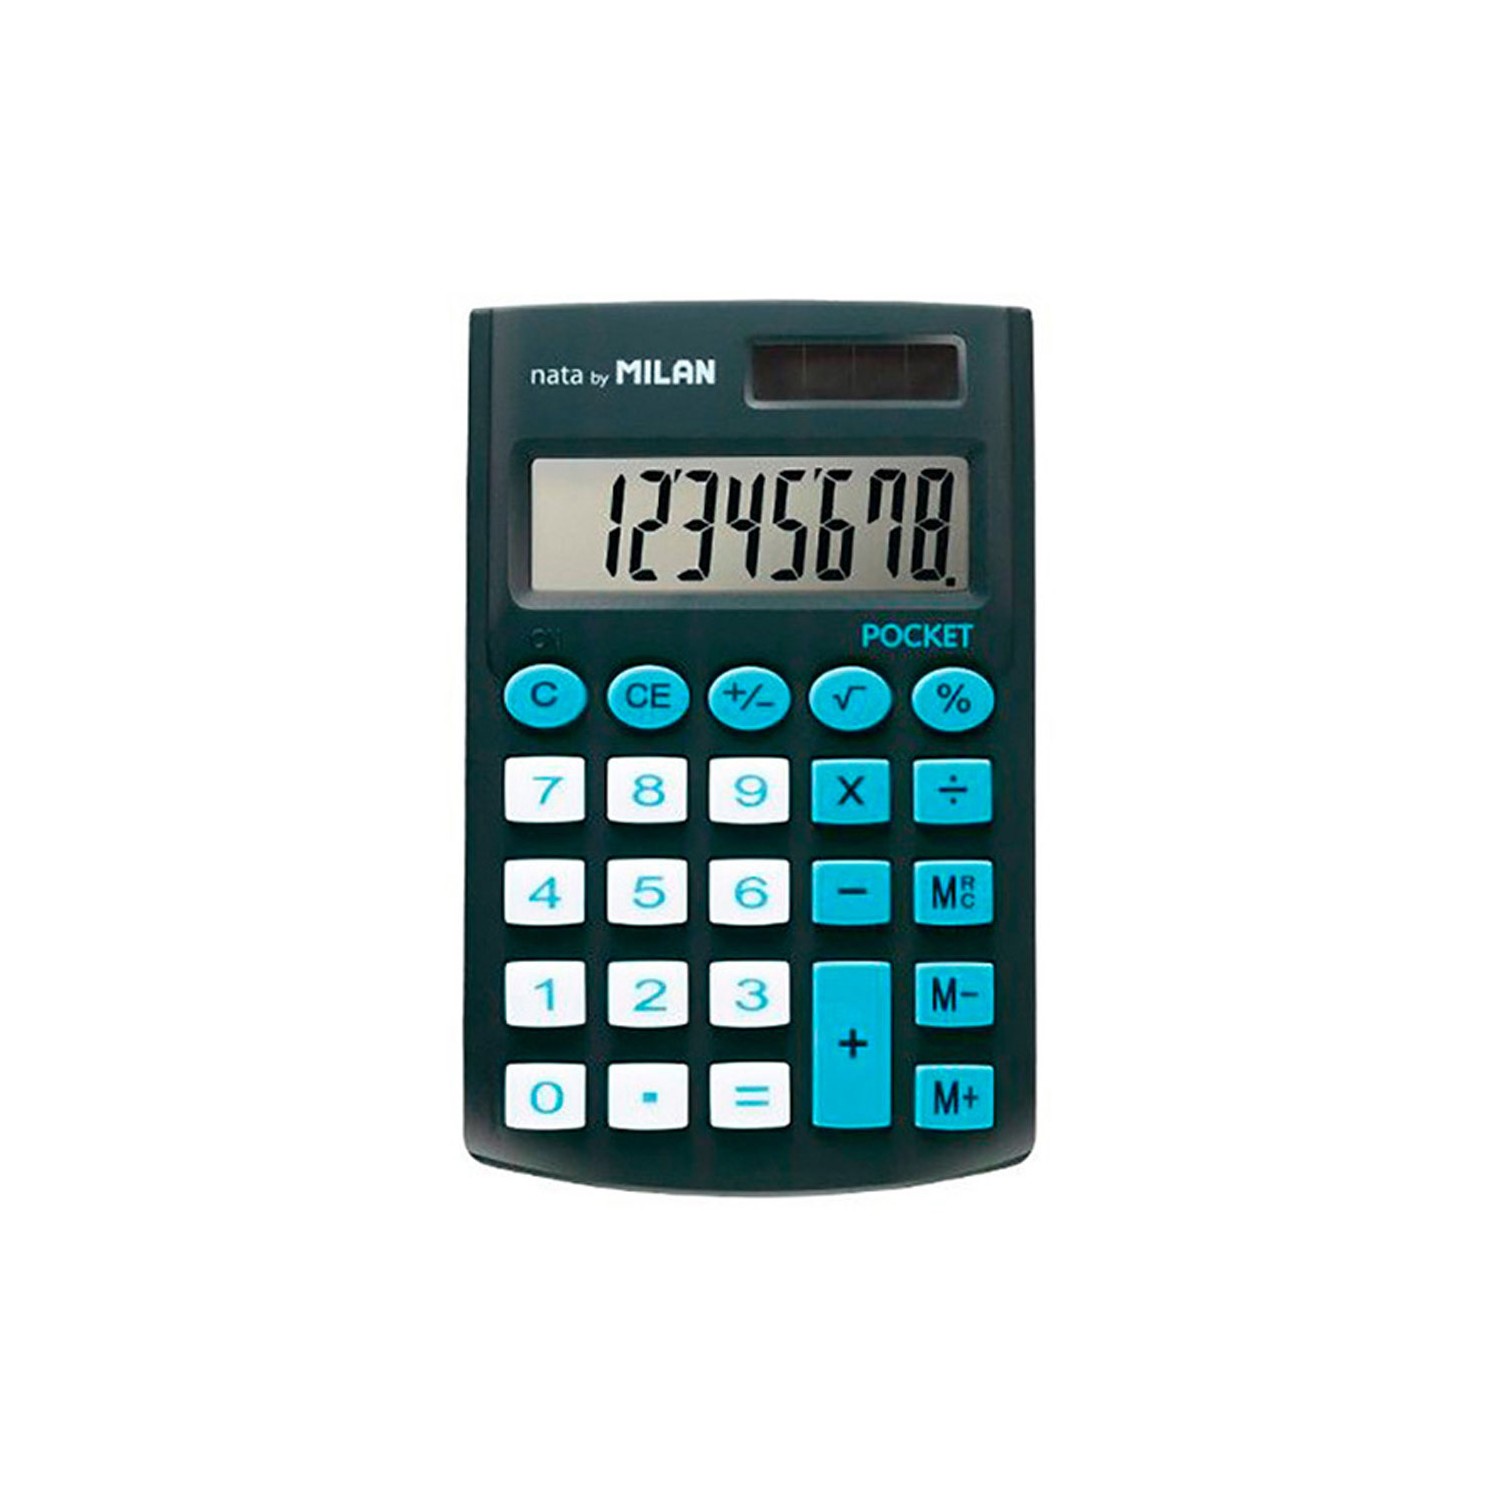 Blister calculadora pocket negra 8 digitos con funda milan